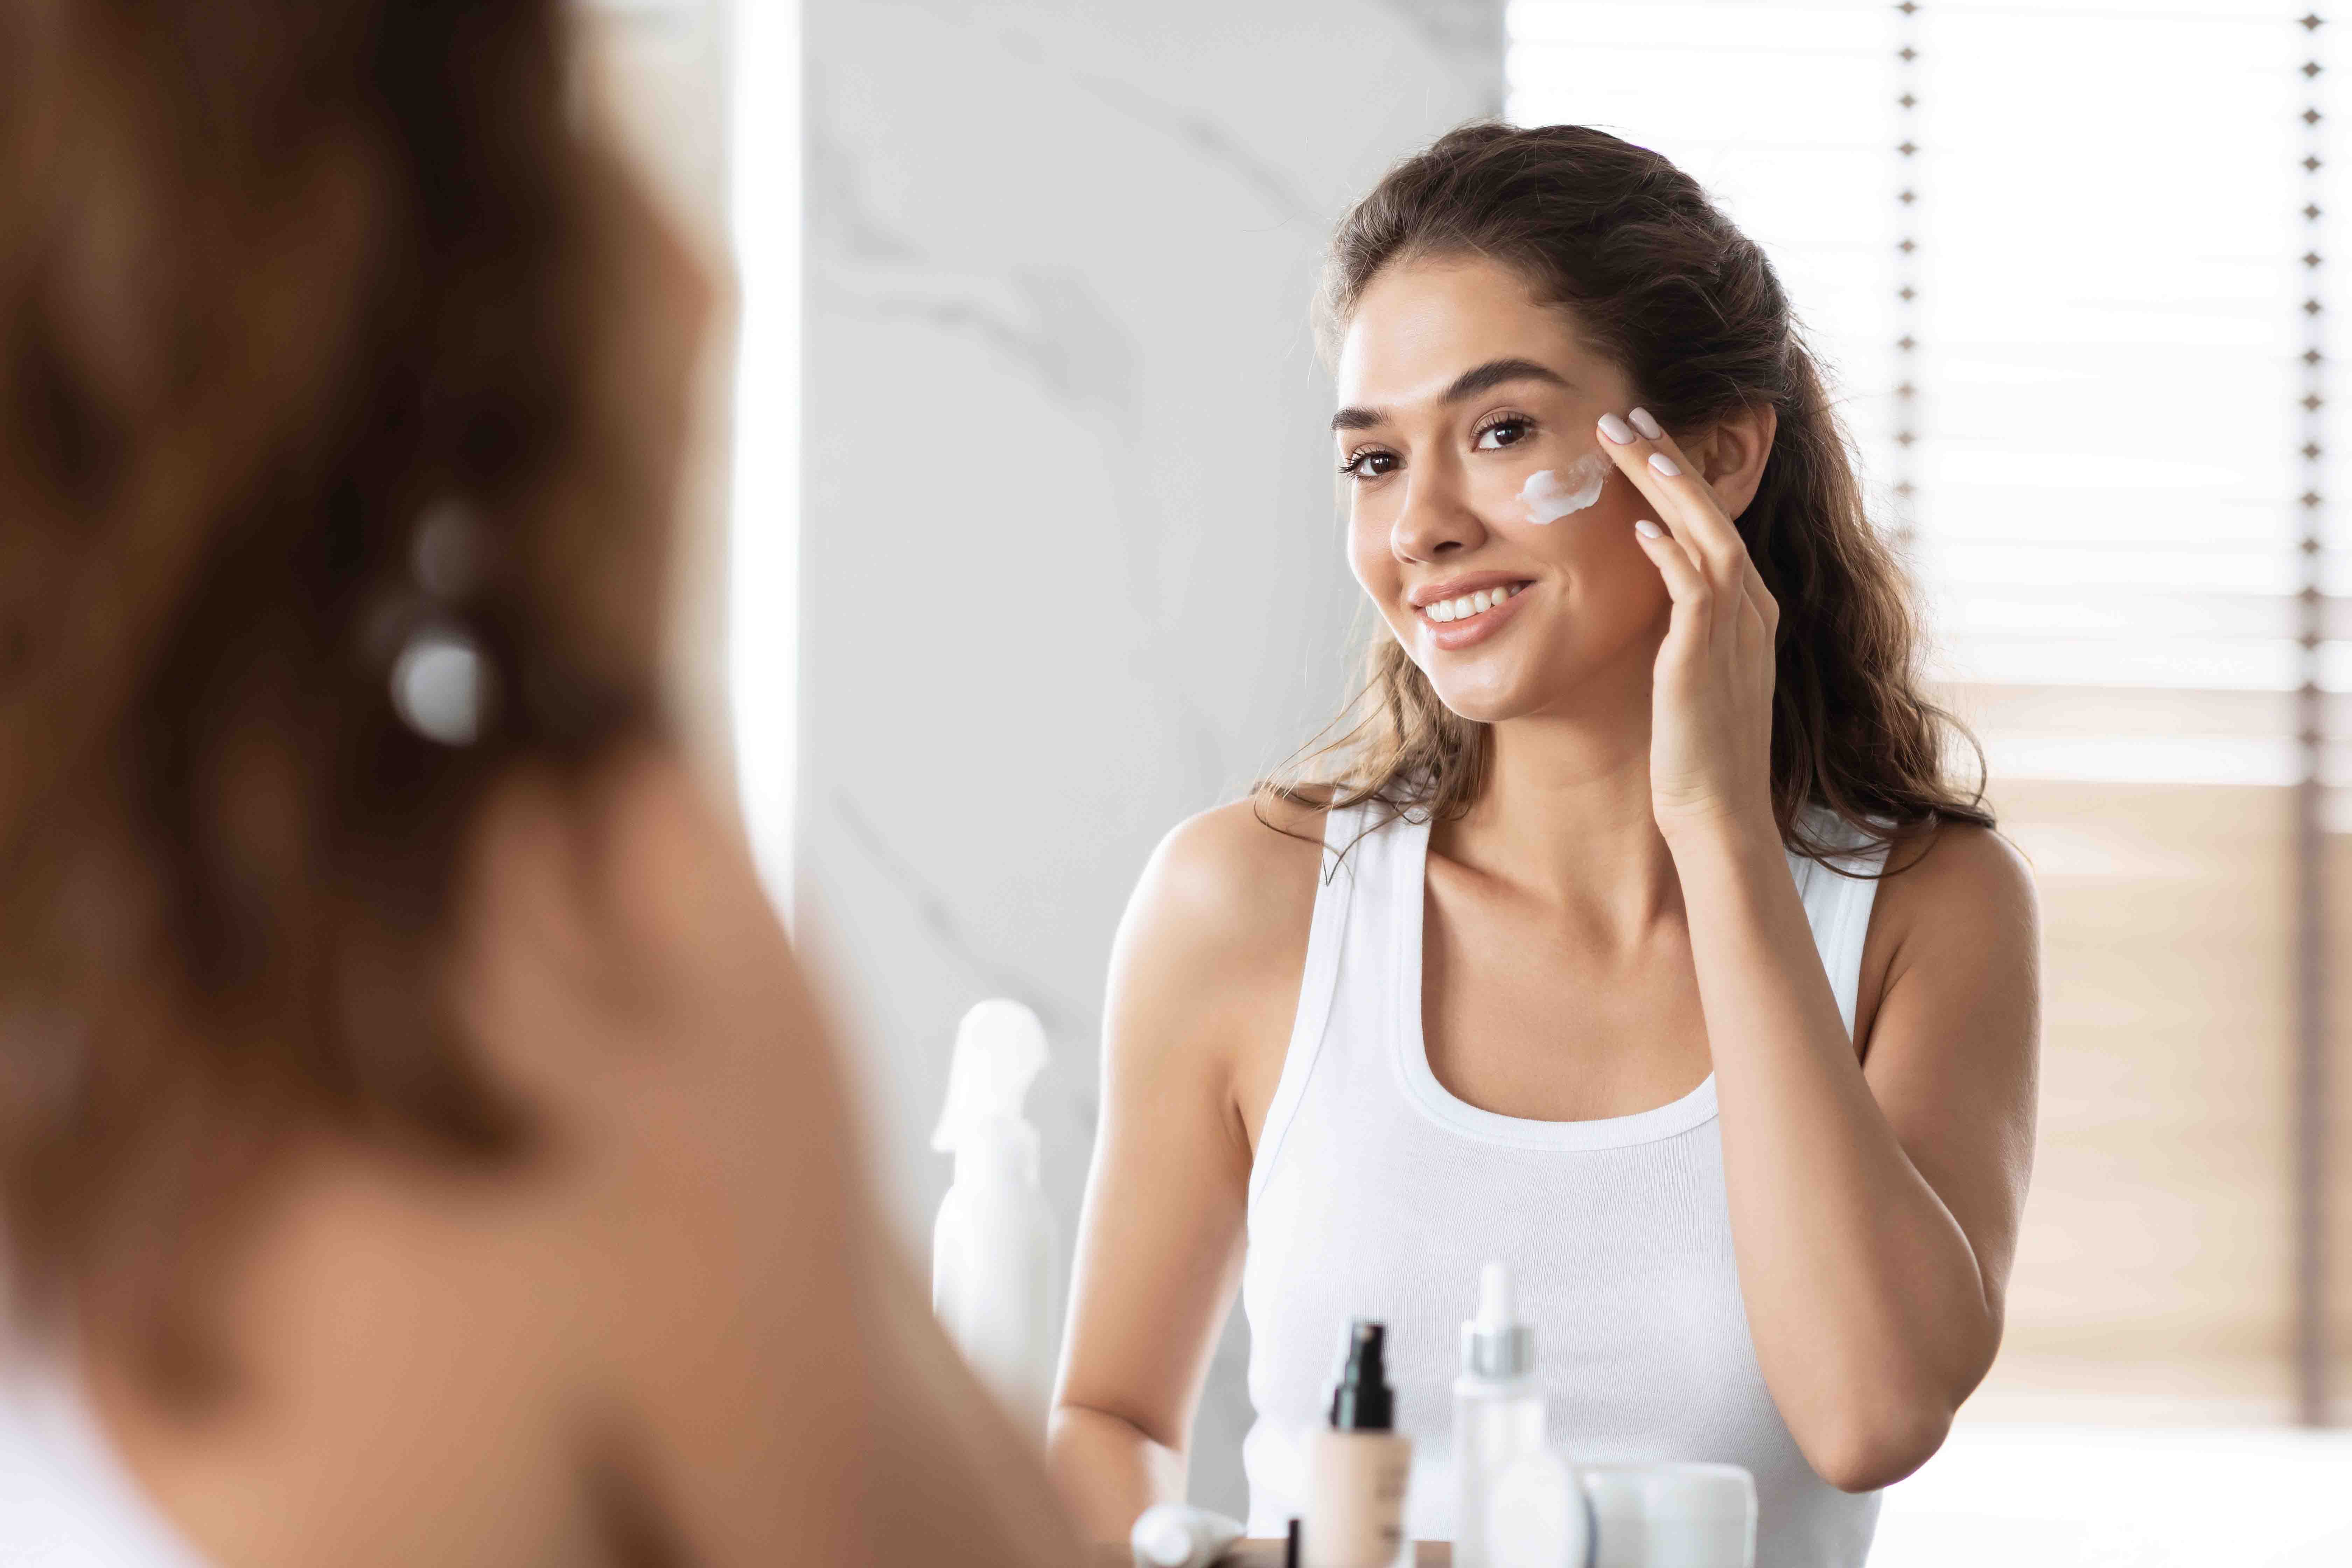 Skincare routine for oily skin - Moisturizer